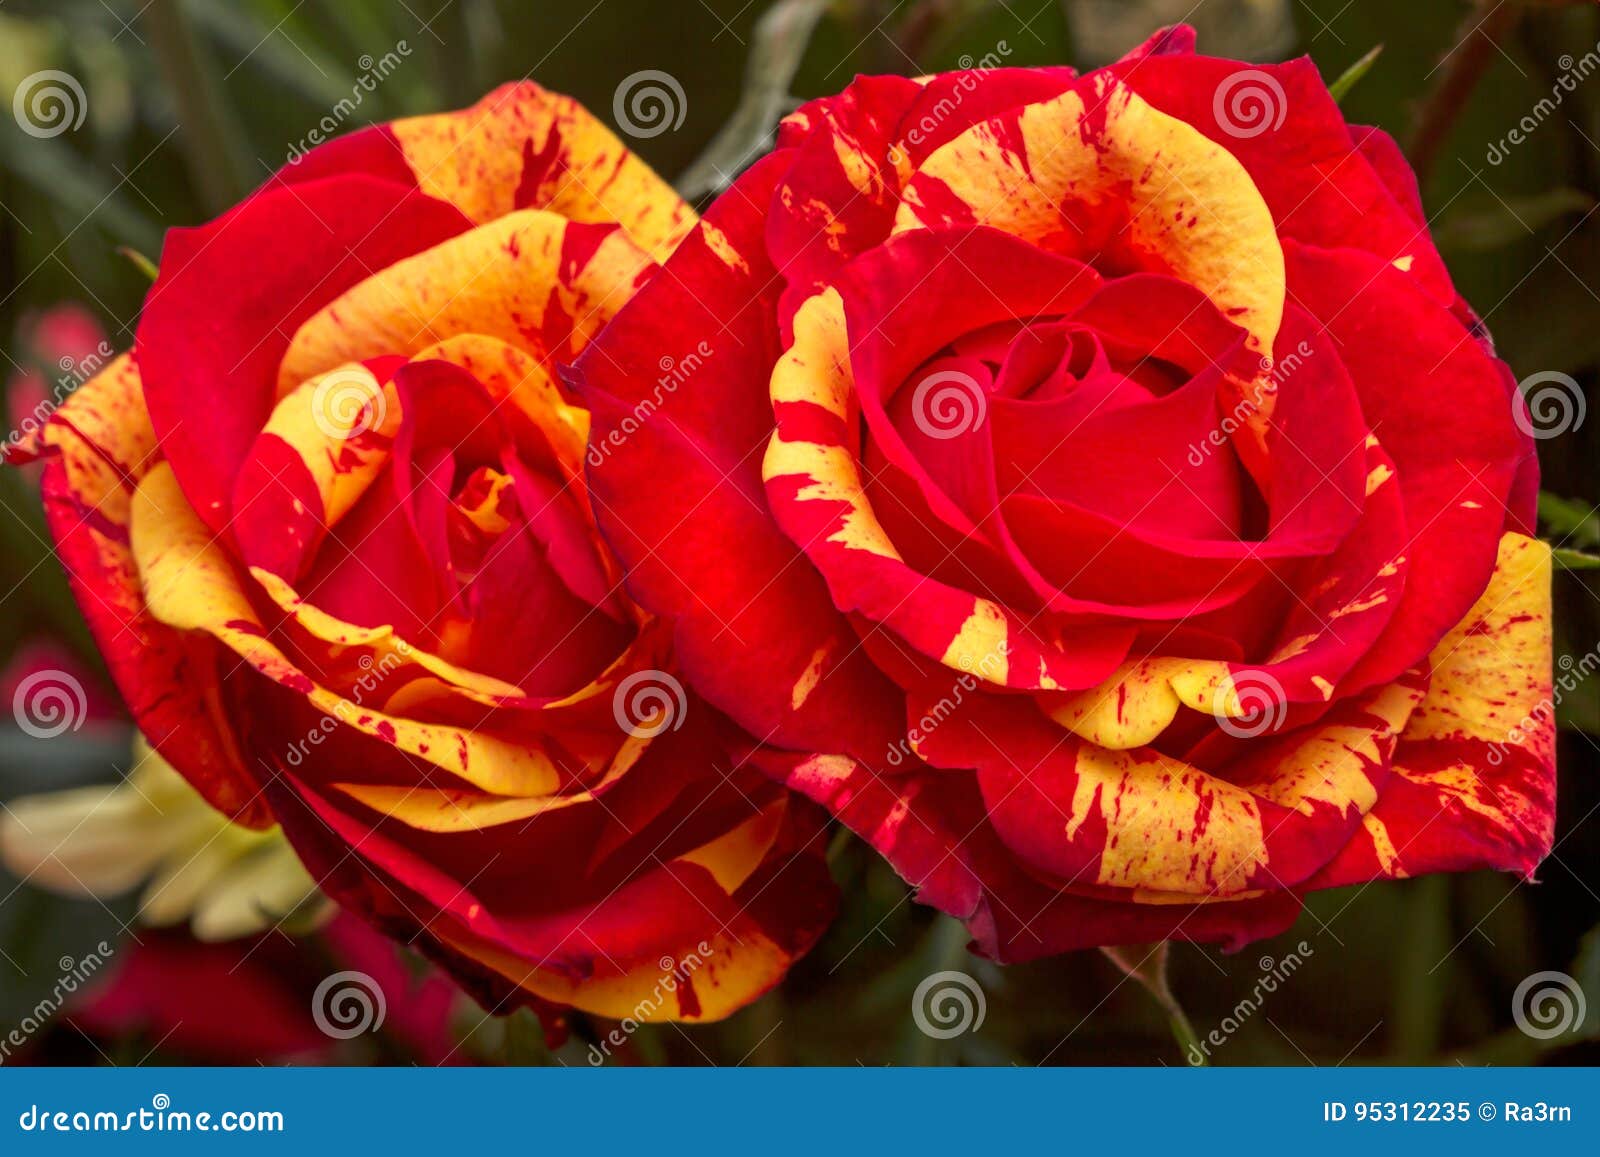 Deux Roses Rouges Avec Le Jaune Image stock - Image du image, nature:  95312235